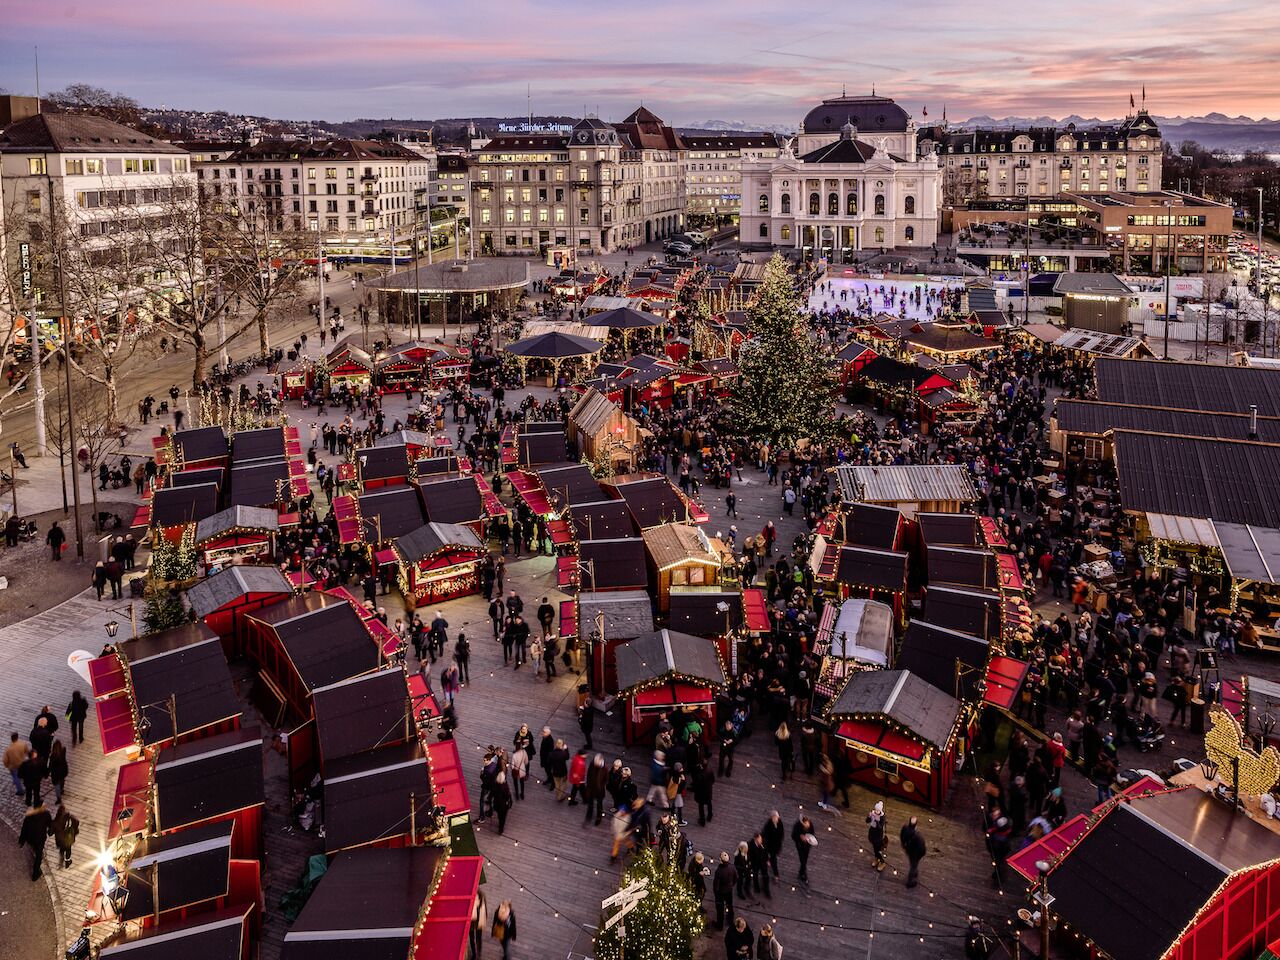 Christmas market in Zurich Switzerland viewed from above